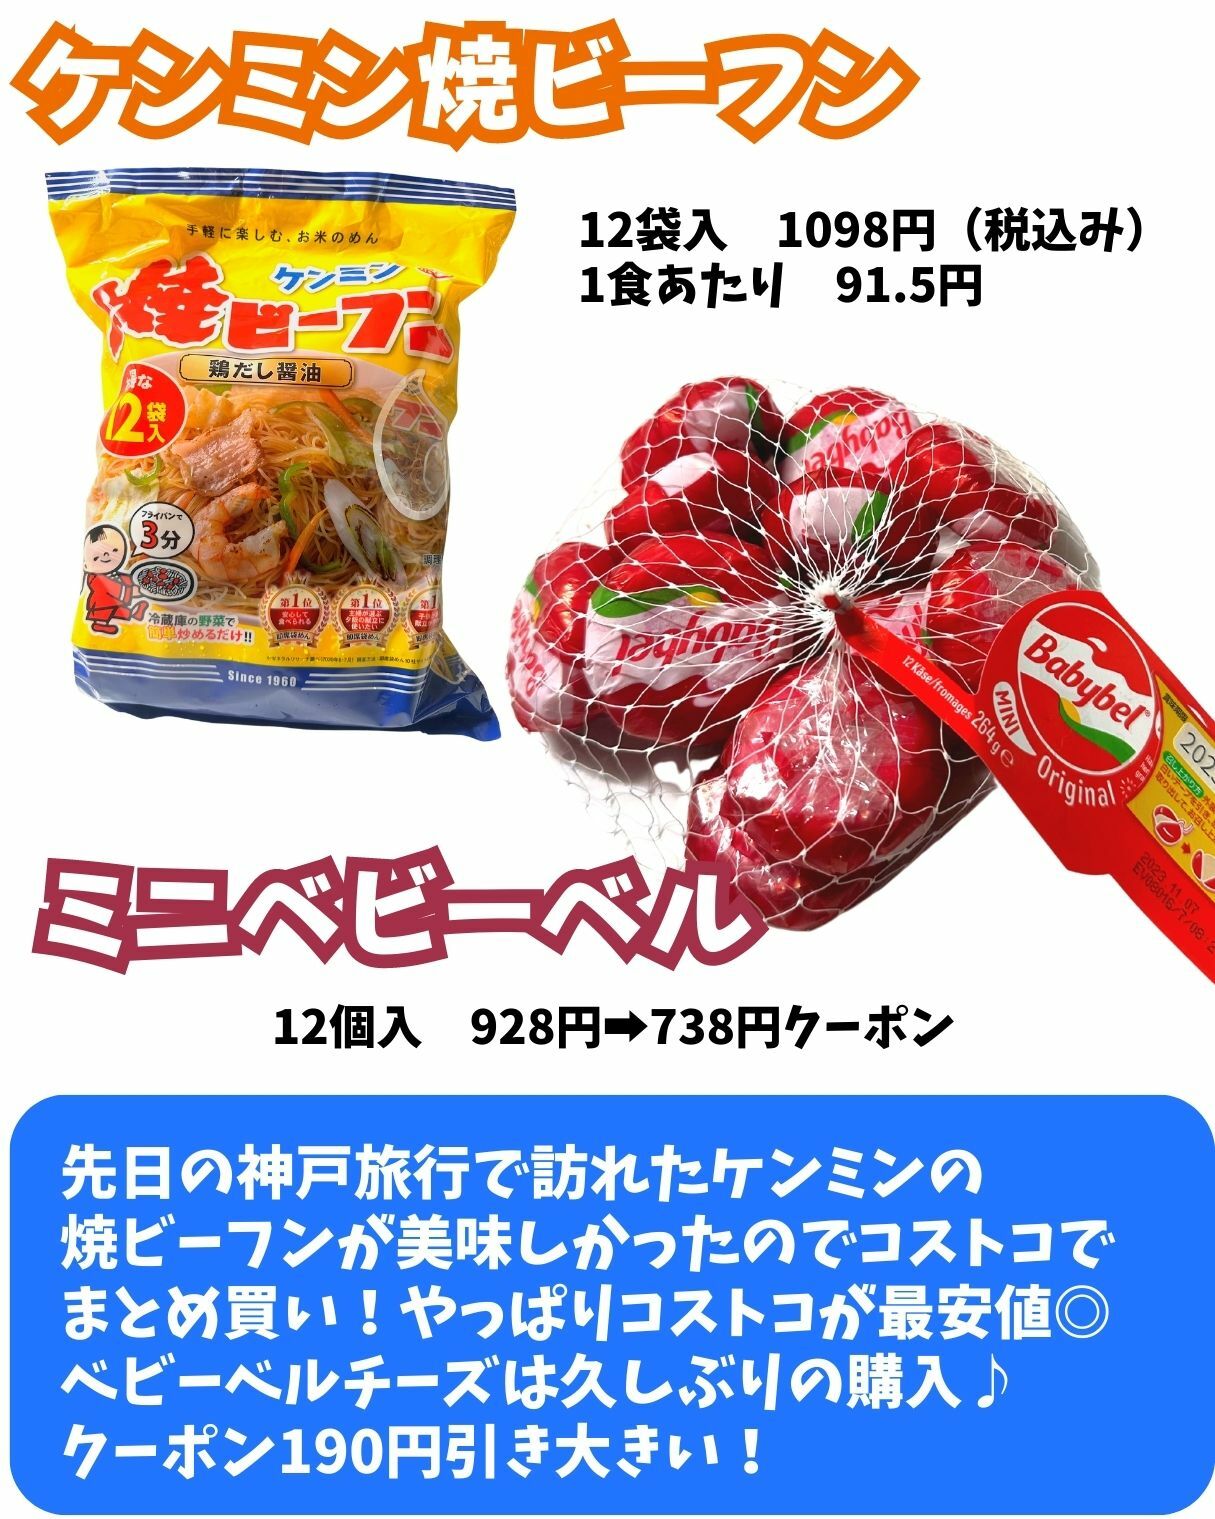 【コストコ】ケンミンの焼ビーフン/ミニベビーベル